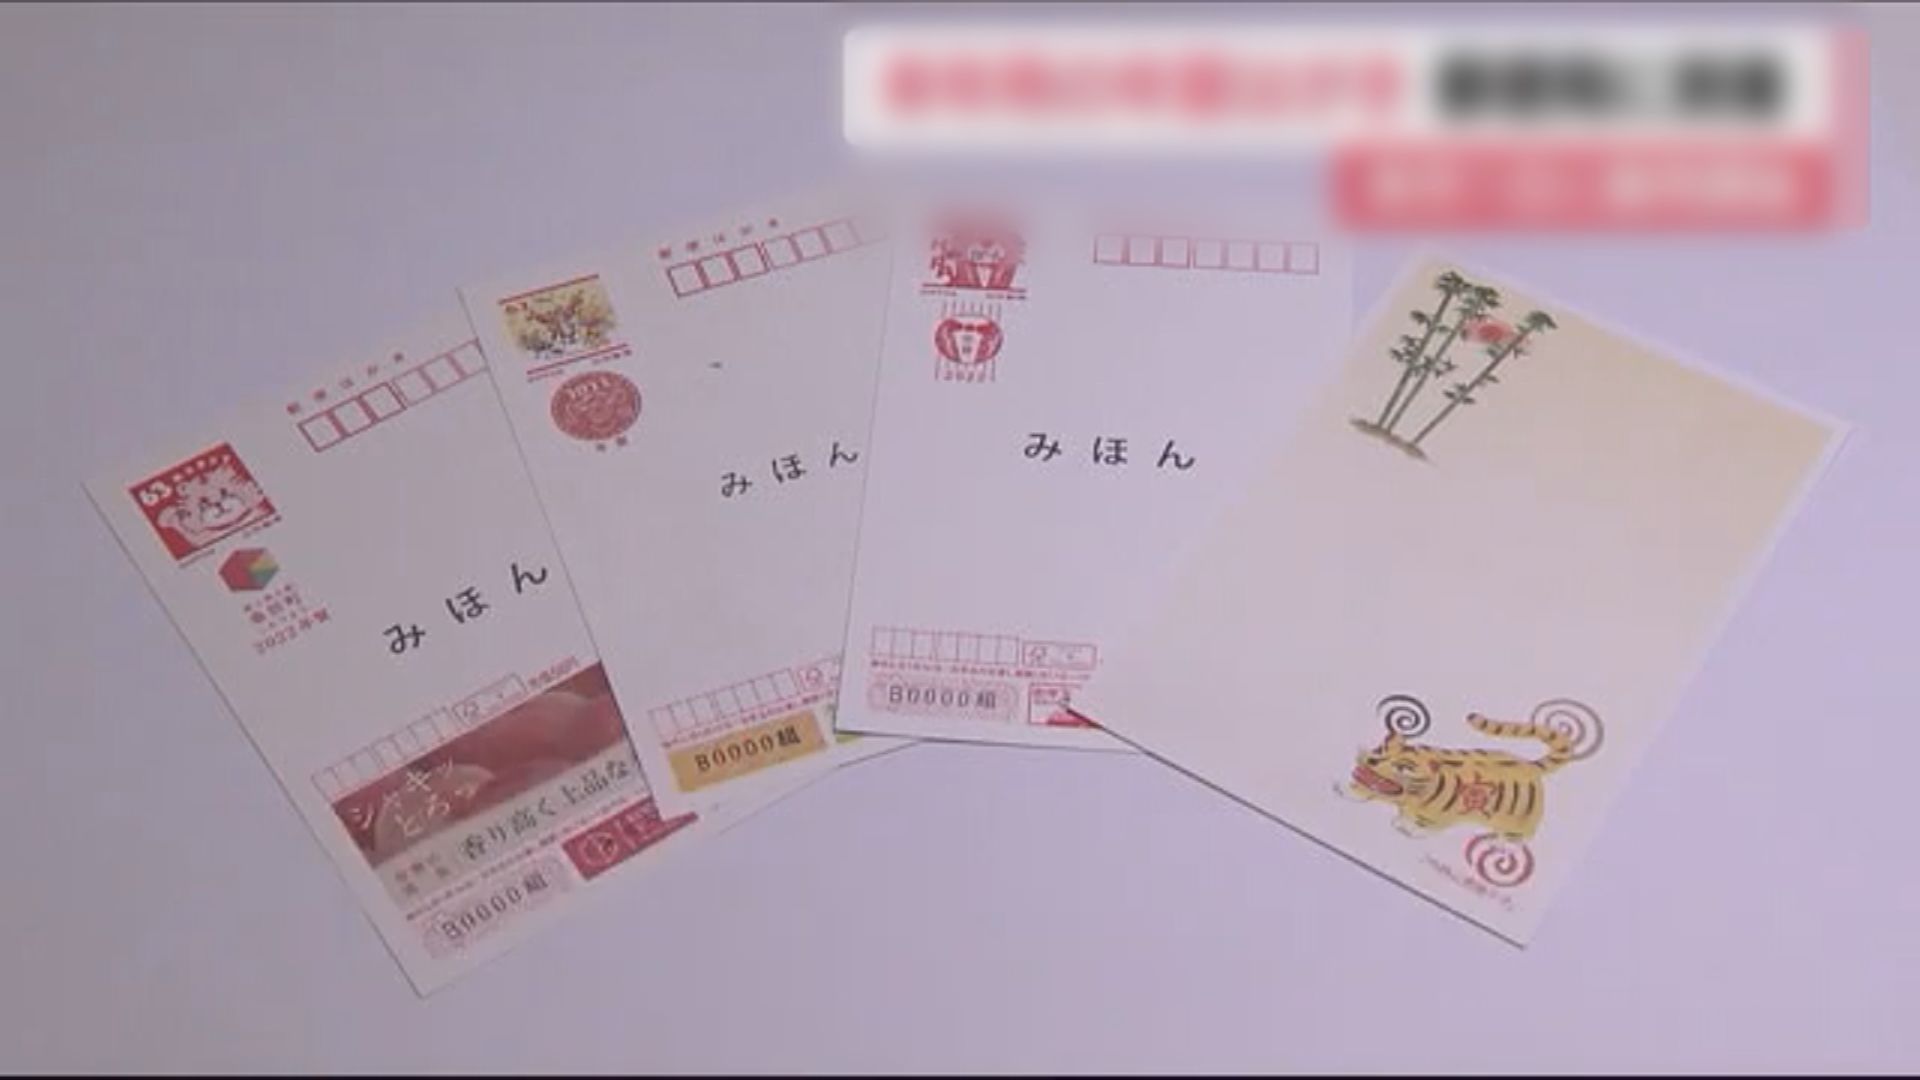 【環球薈報】日本虎年賀年明信片採用環保紙張